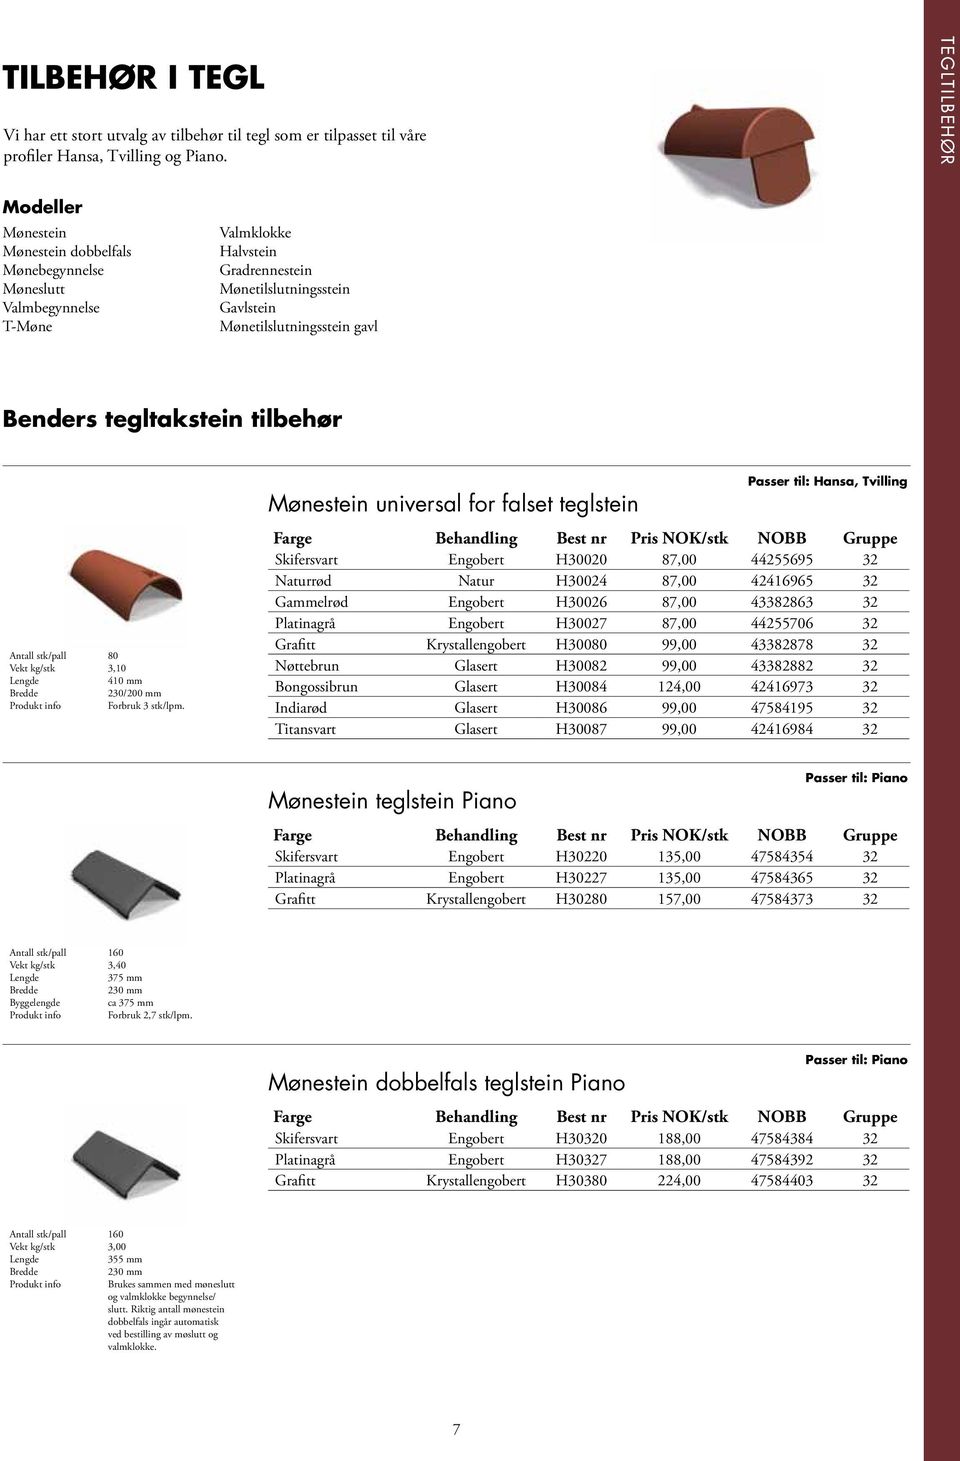 Benders tegltakstein tilbehør Antall stk/pall 80 Vekt kg/stk 3,10 410 mm 230/200 mm Produkt info Forbruk 3 stk/lpm.